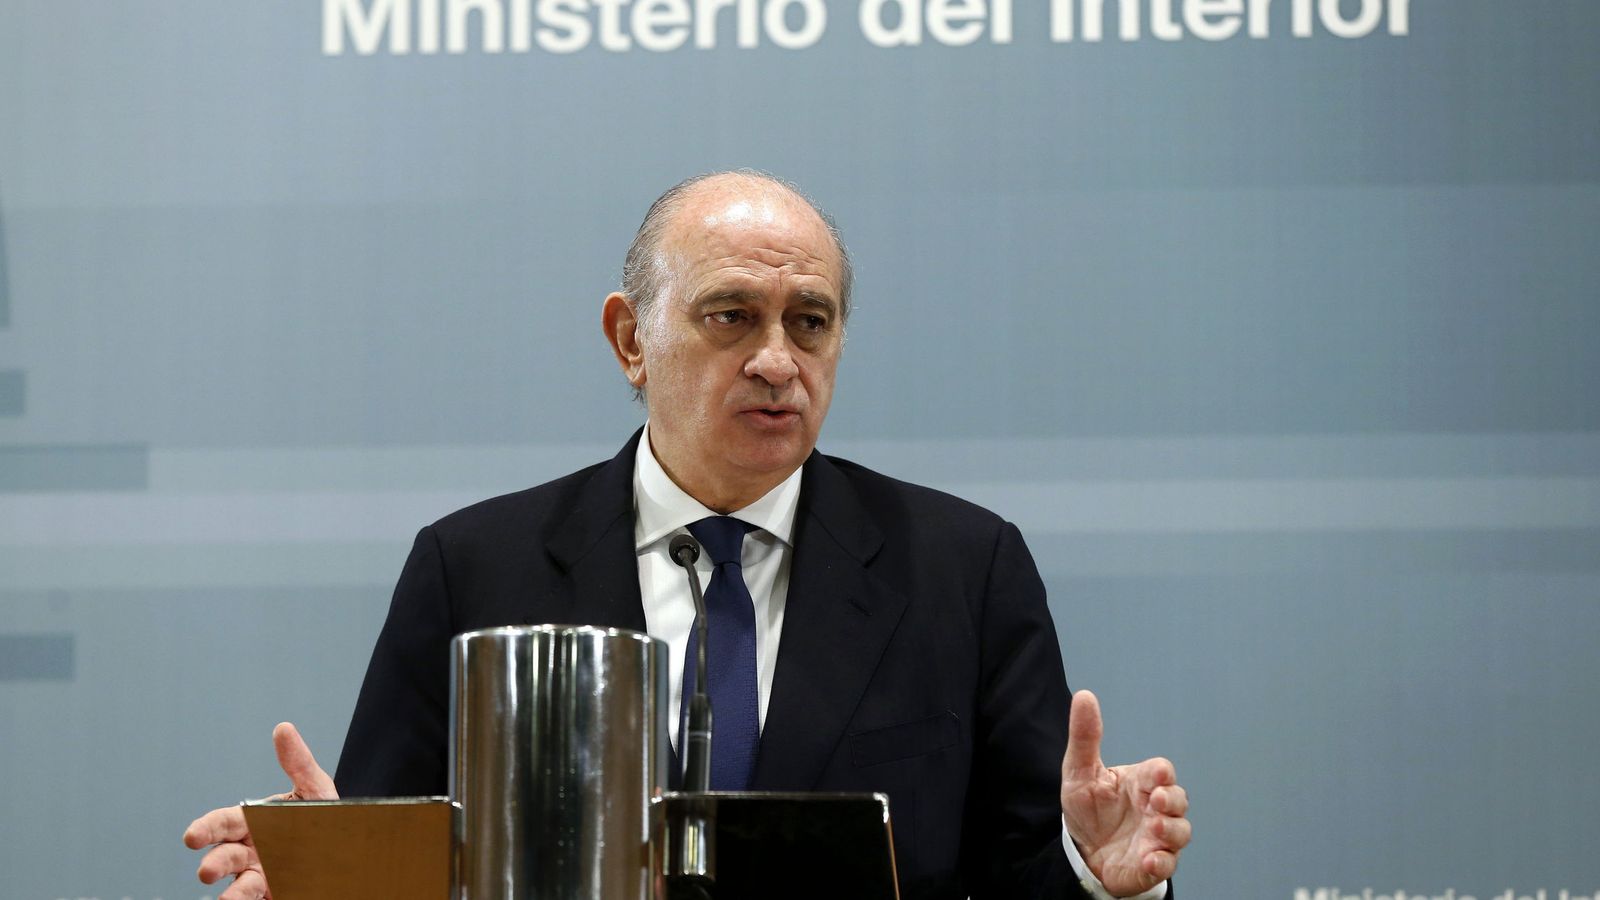 Foto: El ministro de Interior en funciones, Jorge Fernández Díaz, en una rueda de prensa. (EFE)